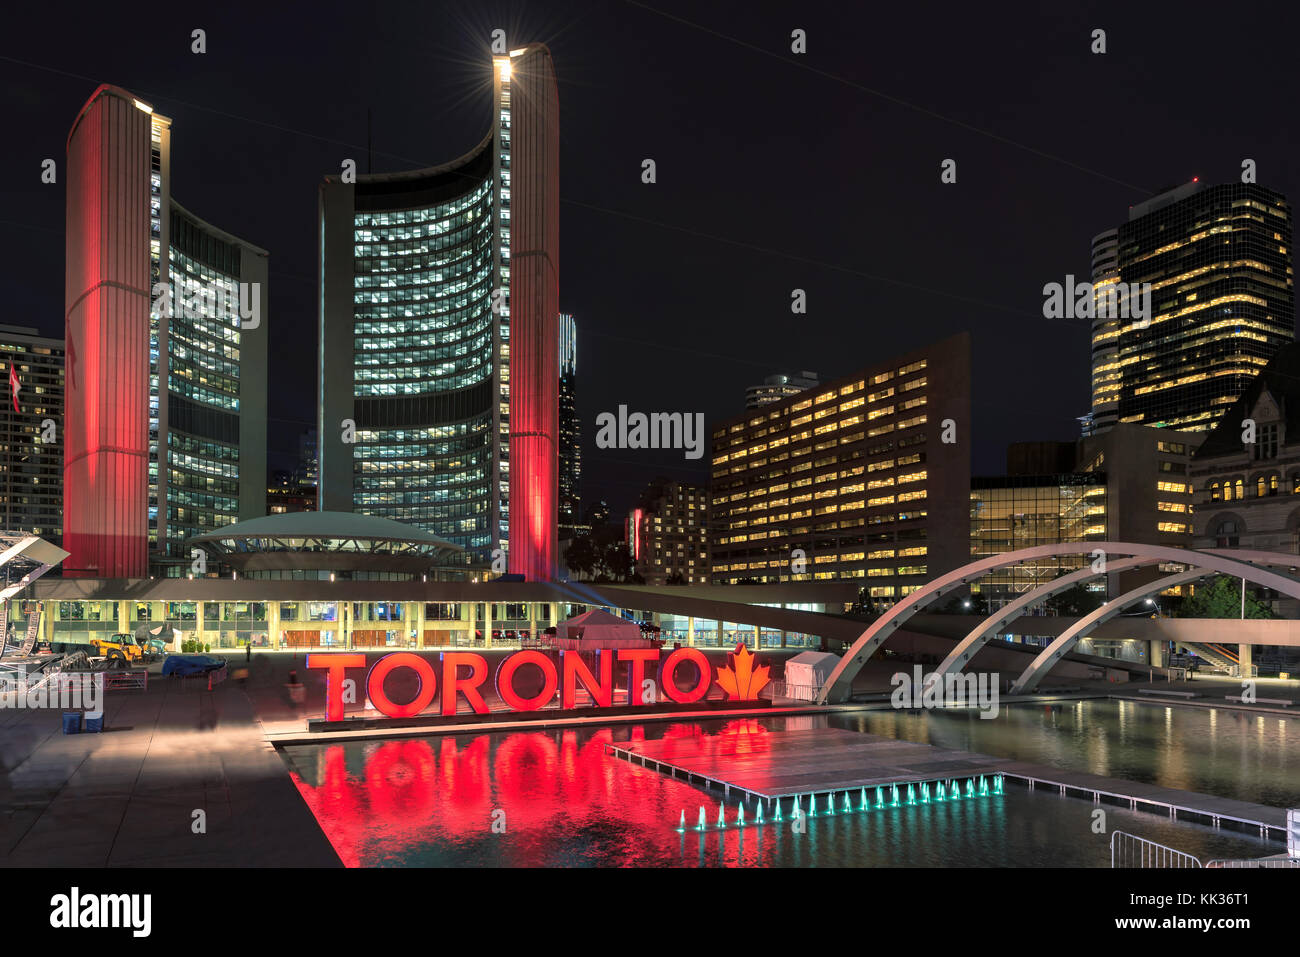 L'hôtel de ville de Toronto, au centre-ville de nuit, au Canada. Banque D'Images